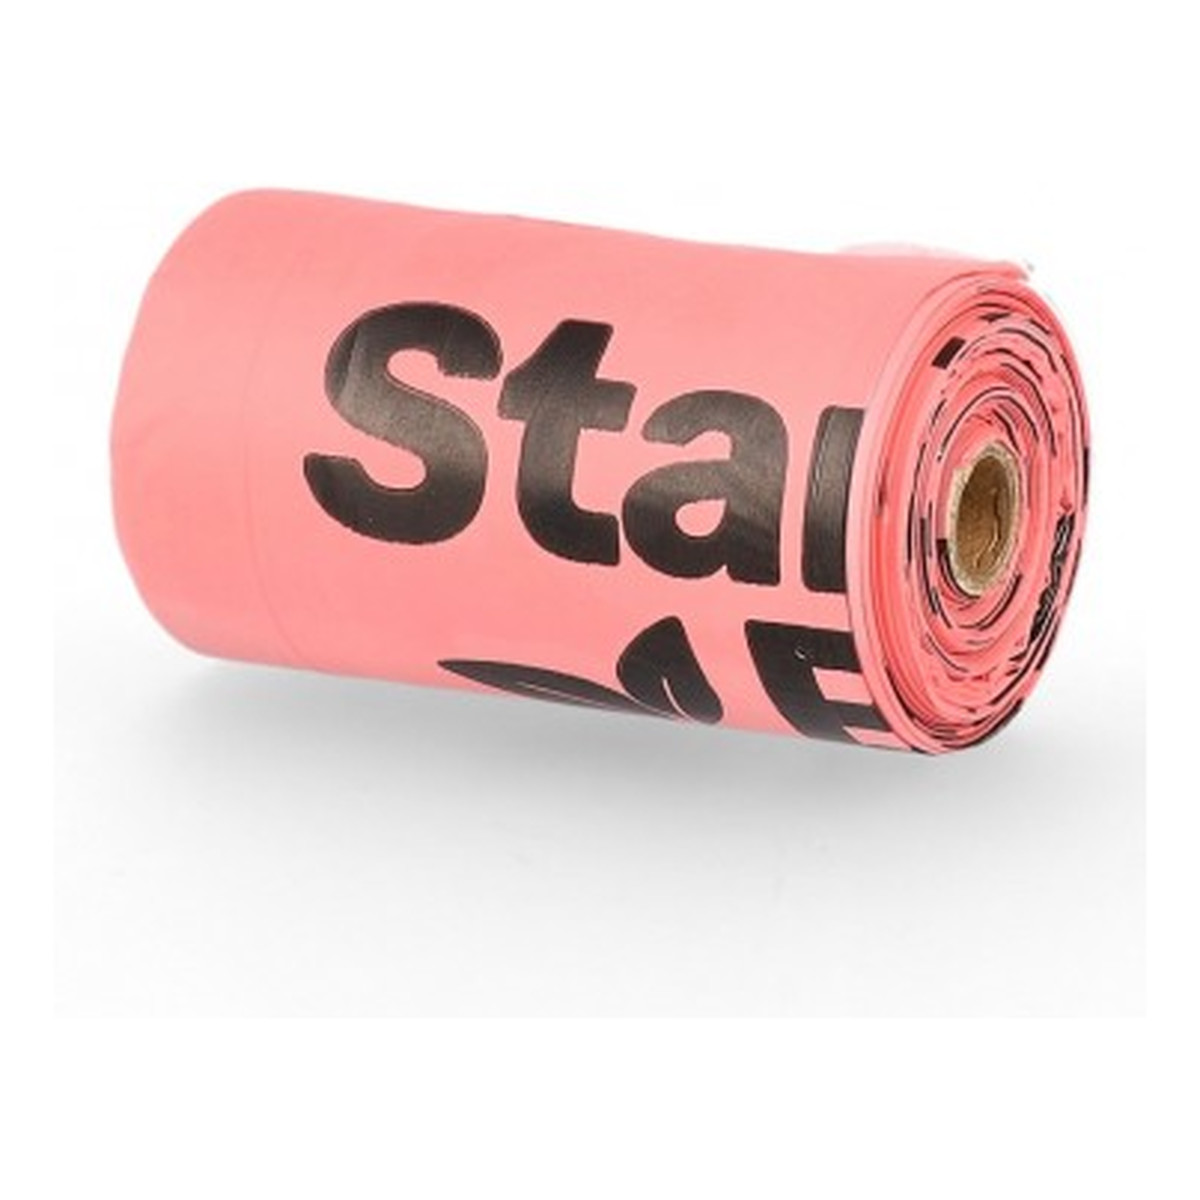 StarchBag Worki na psie odchody, biodegradowalne, w 100% kompostowalne, różowe, 15 szt.